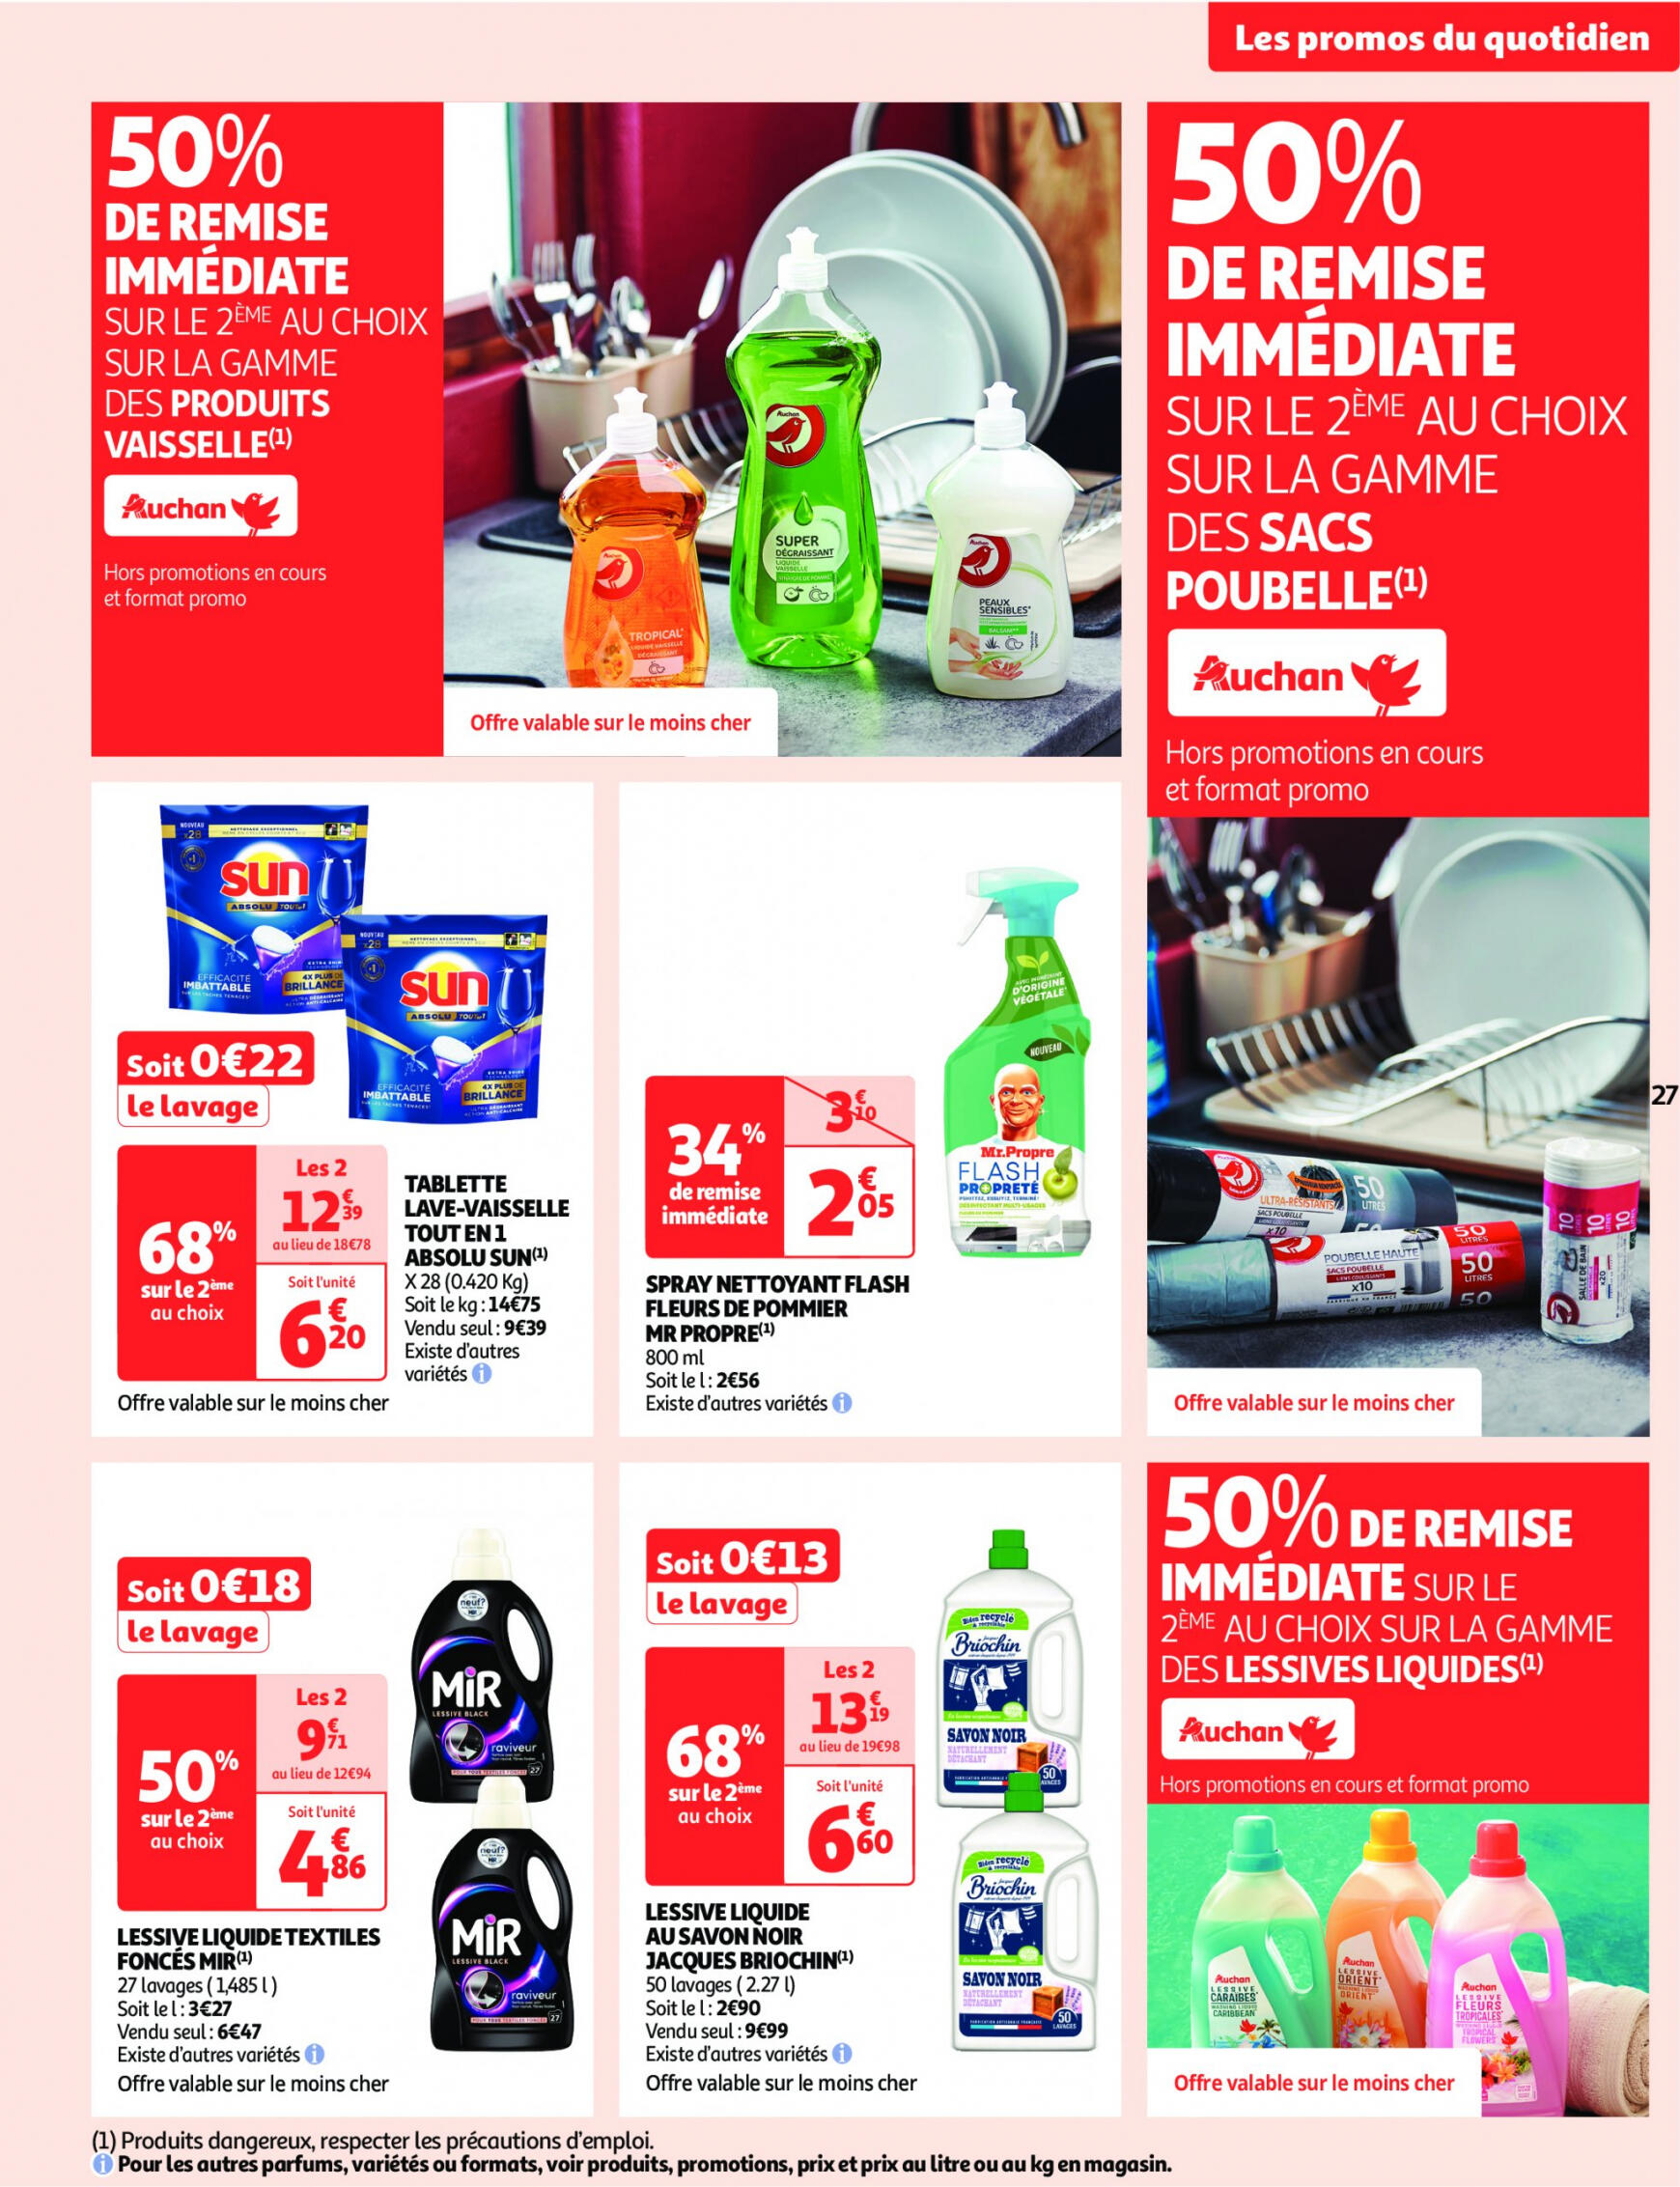 auchan - Auchan supermarché - Faites le plein de bonnes affaires folder huidig 22.05. - 26.05. - page: 27